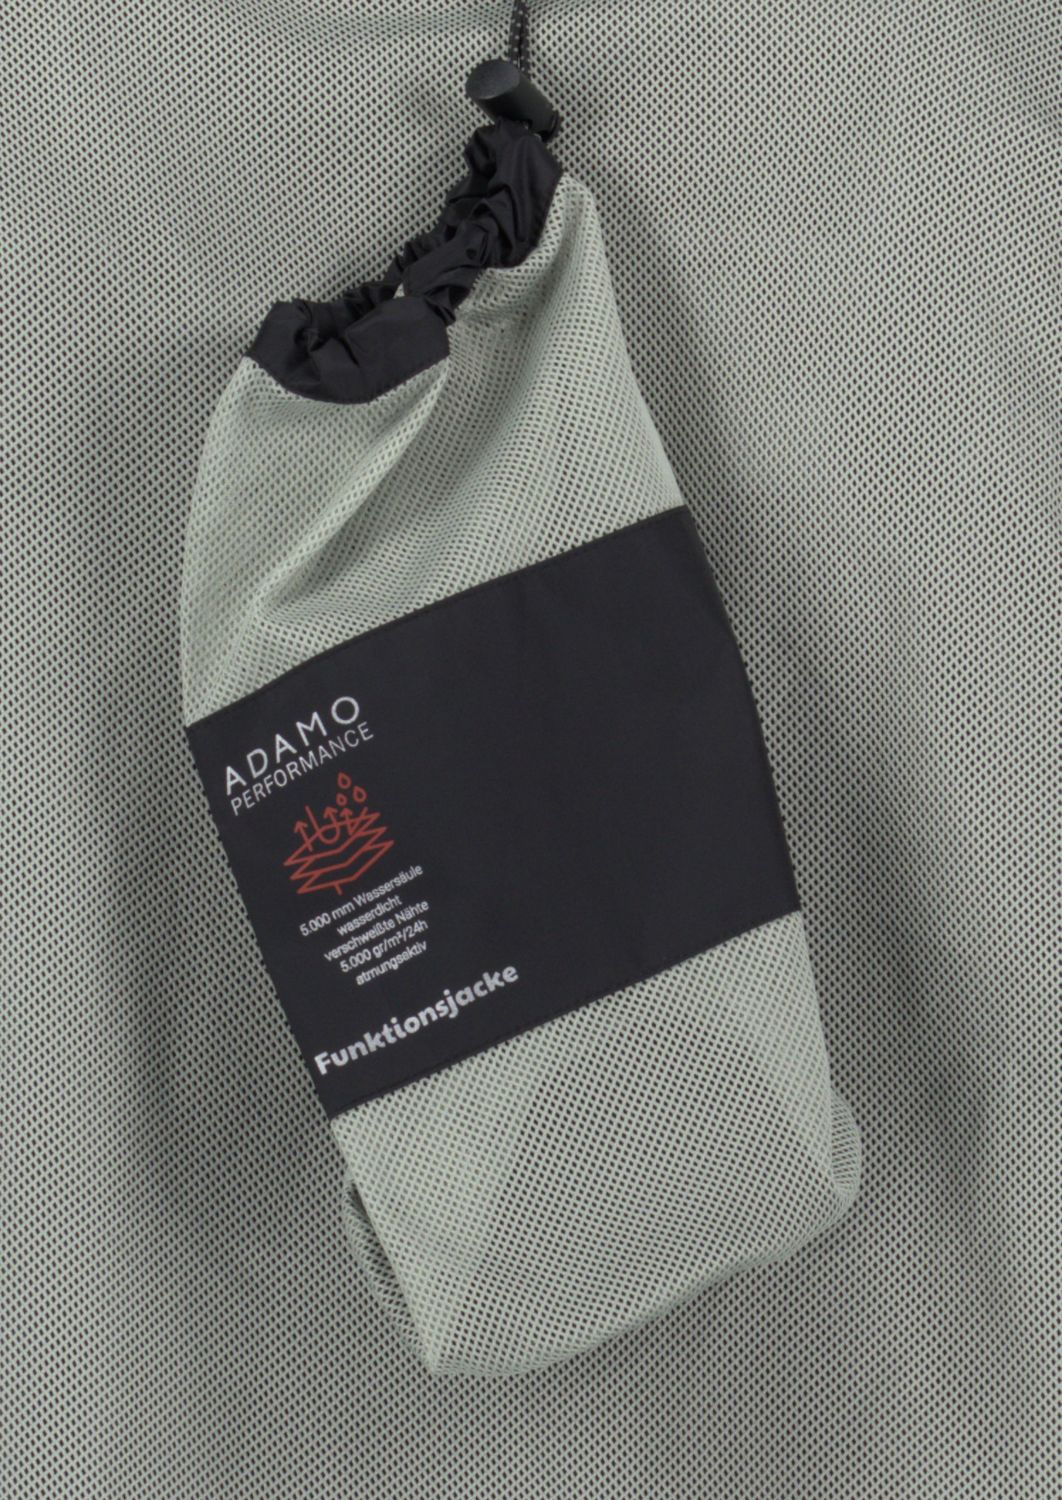 Herren Regenjacke schwarz Serie "London" von ADAMO in großen Größen 3XL bis 12XL